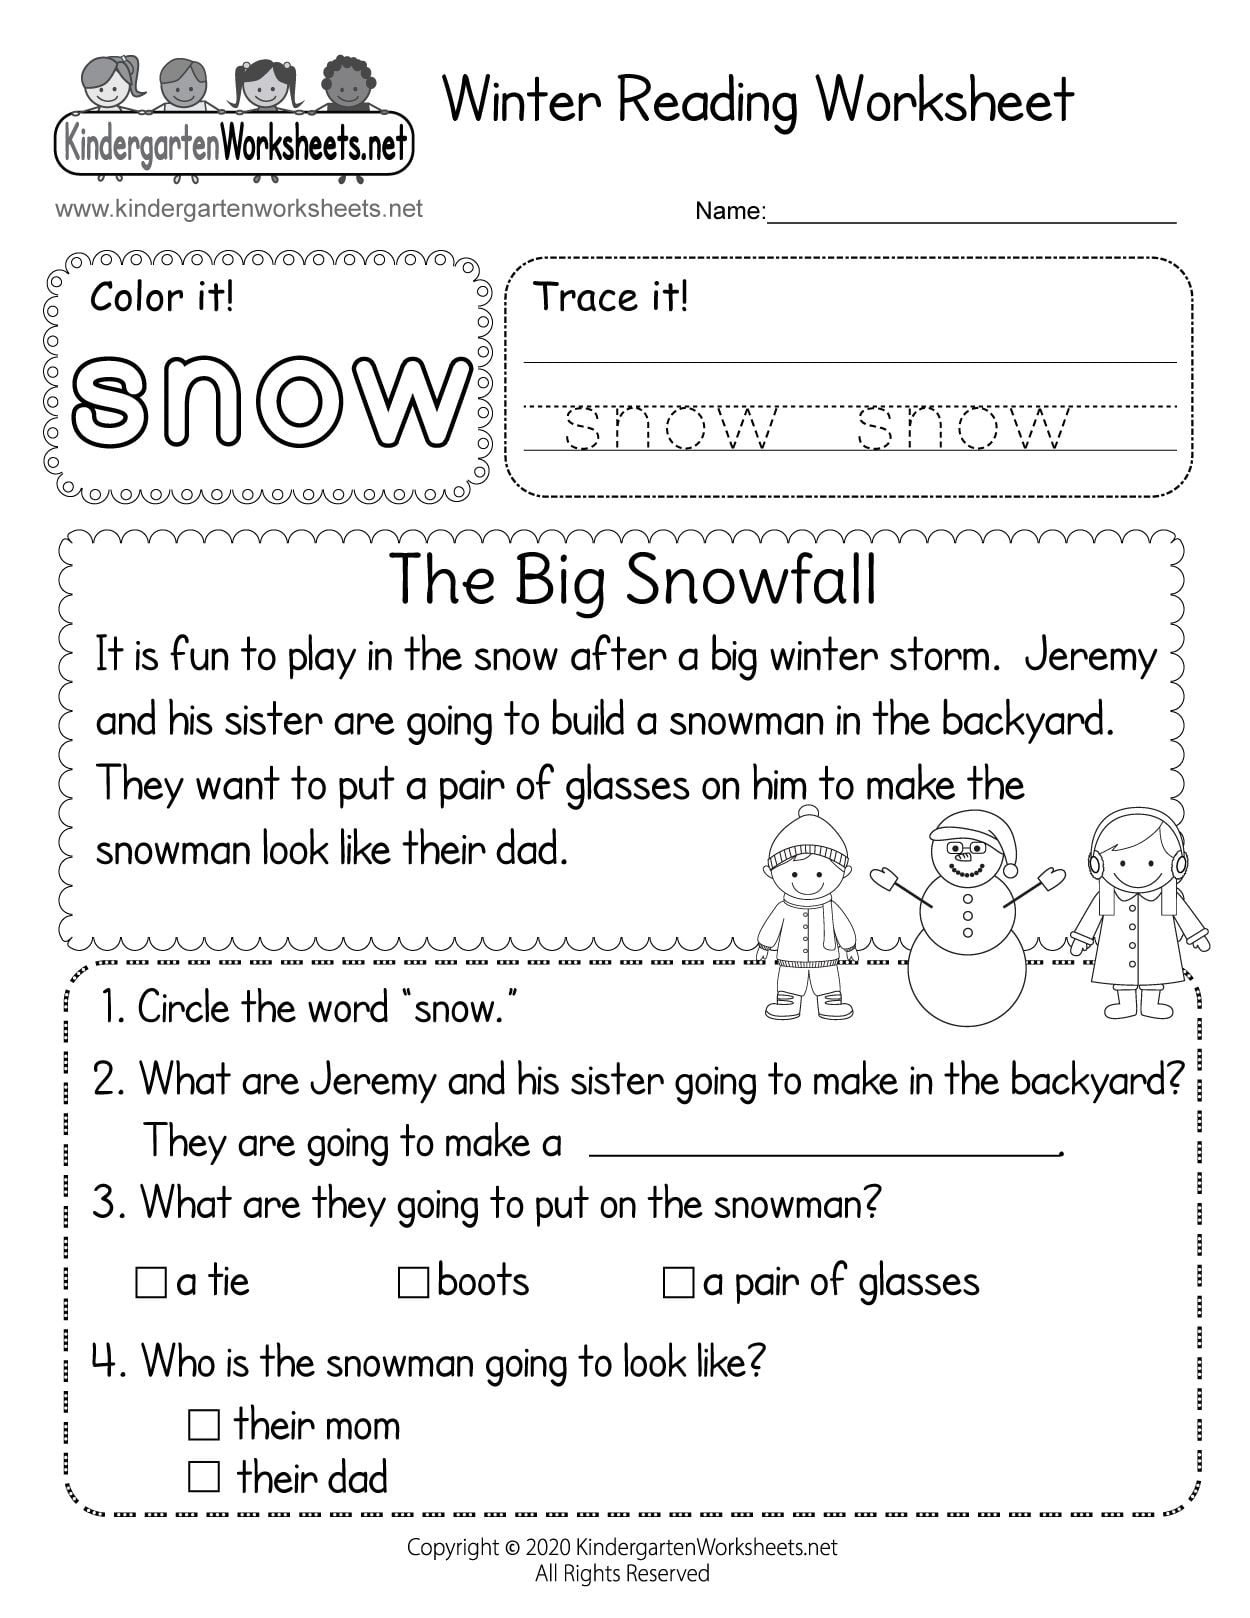 Kindergarten Winter Reading Worksheet Reading Worksheets Kindergarten Reading Worksheets Reading Comprehension Worksheets